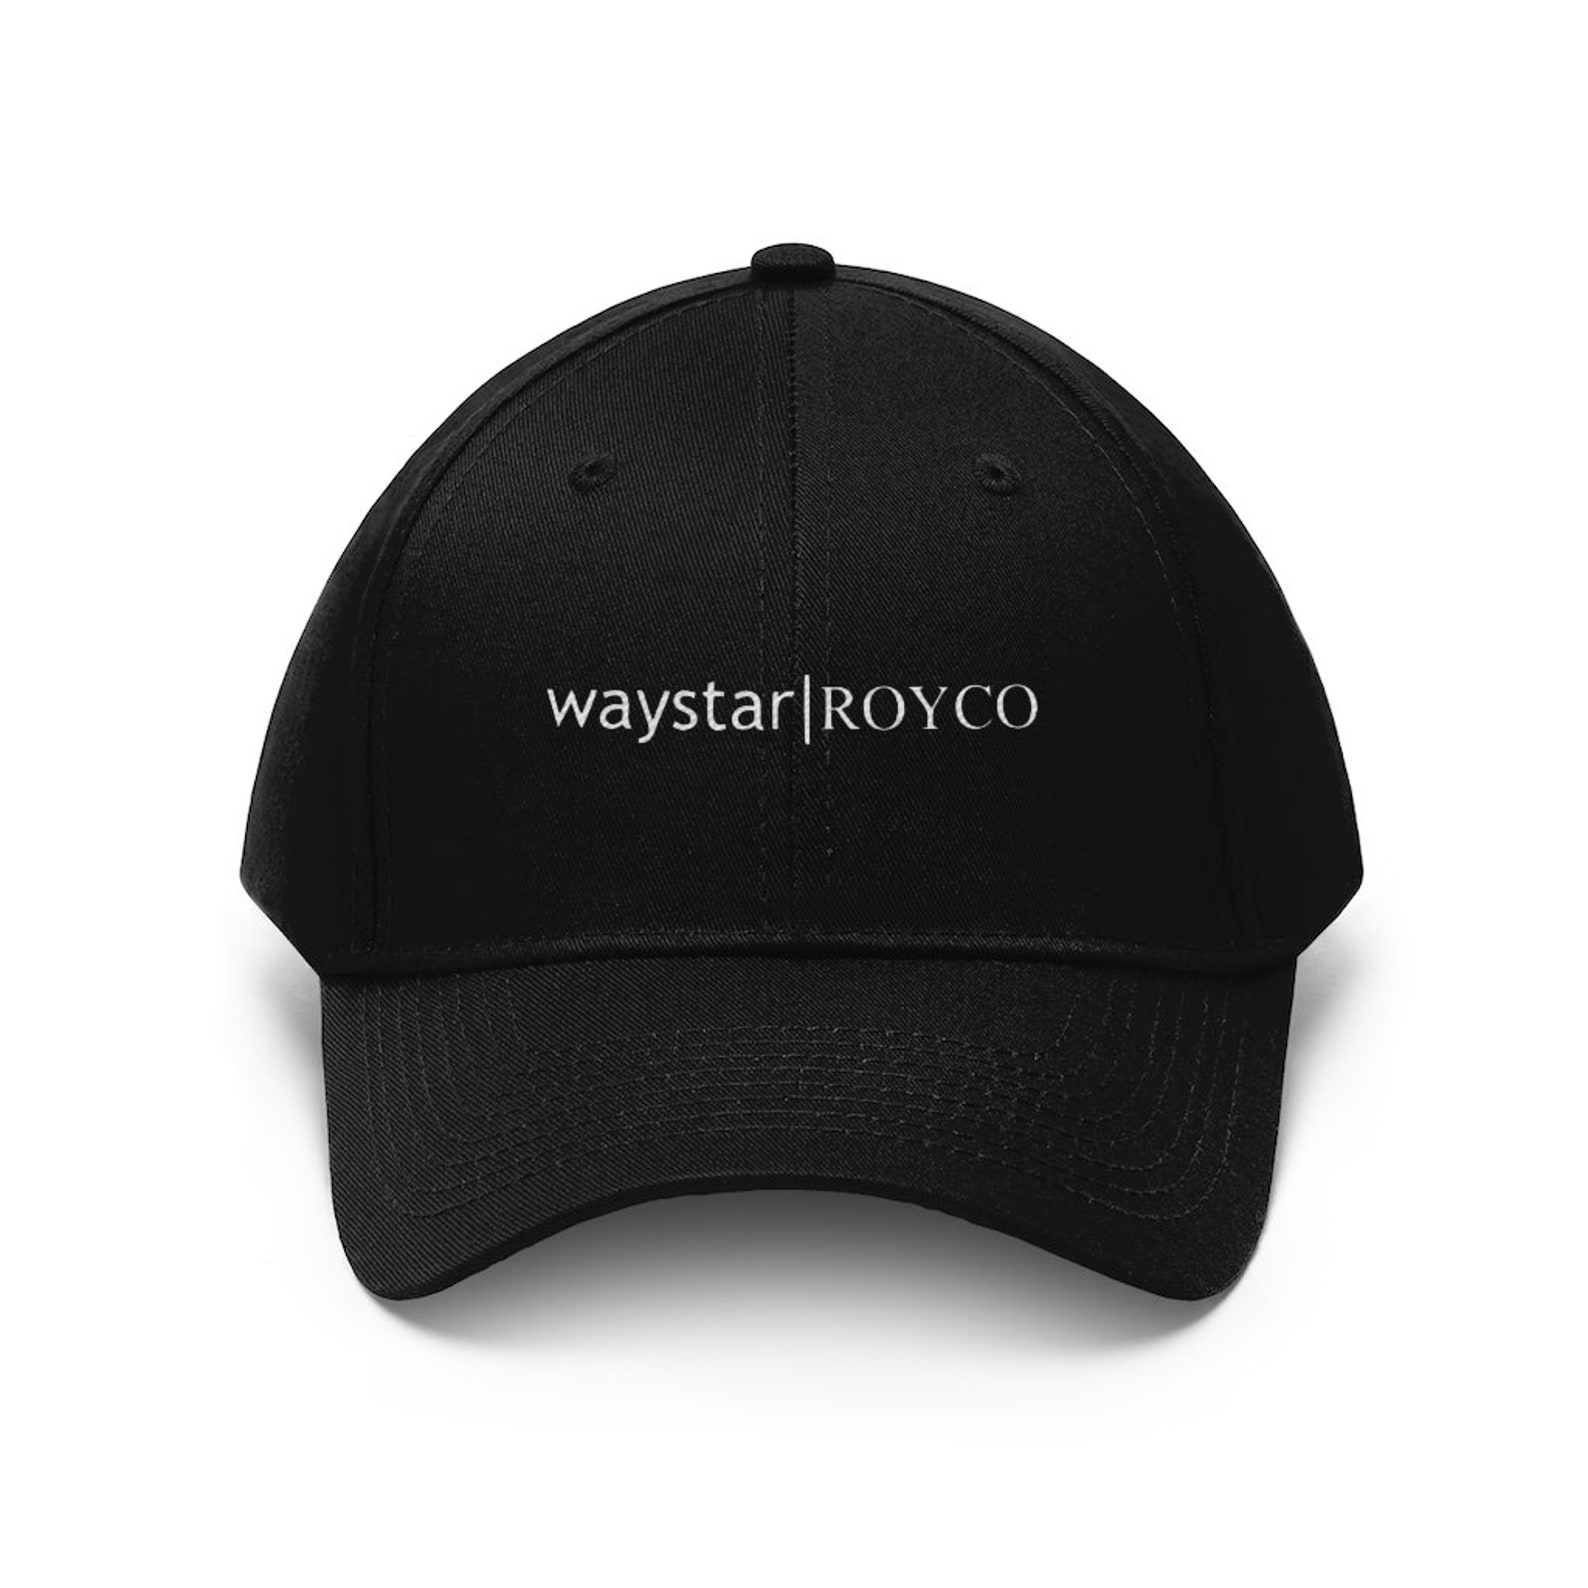 A Waystar Royco hat